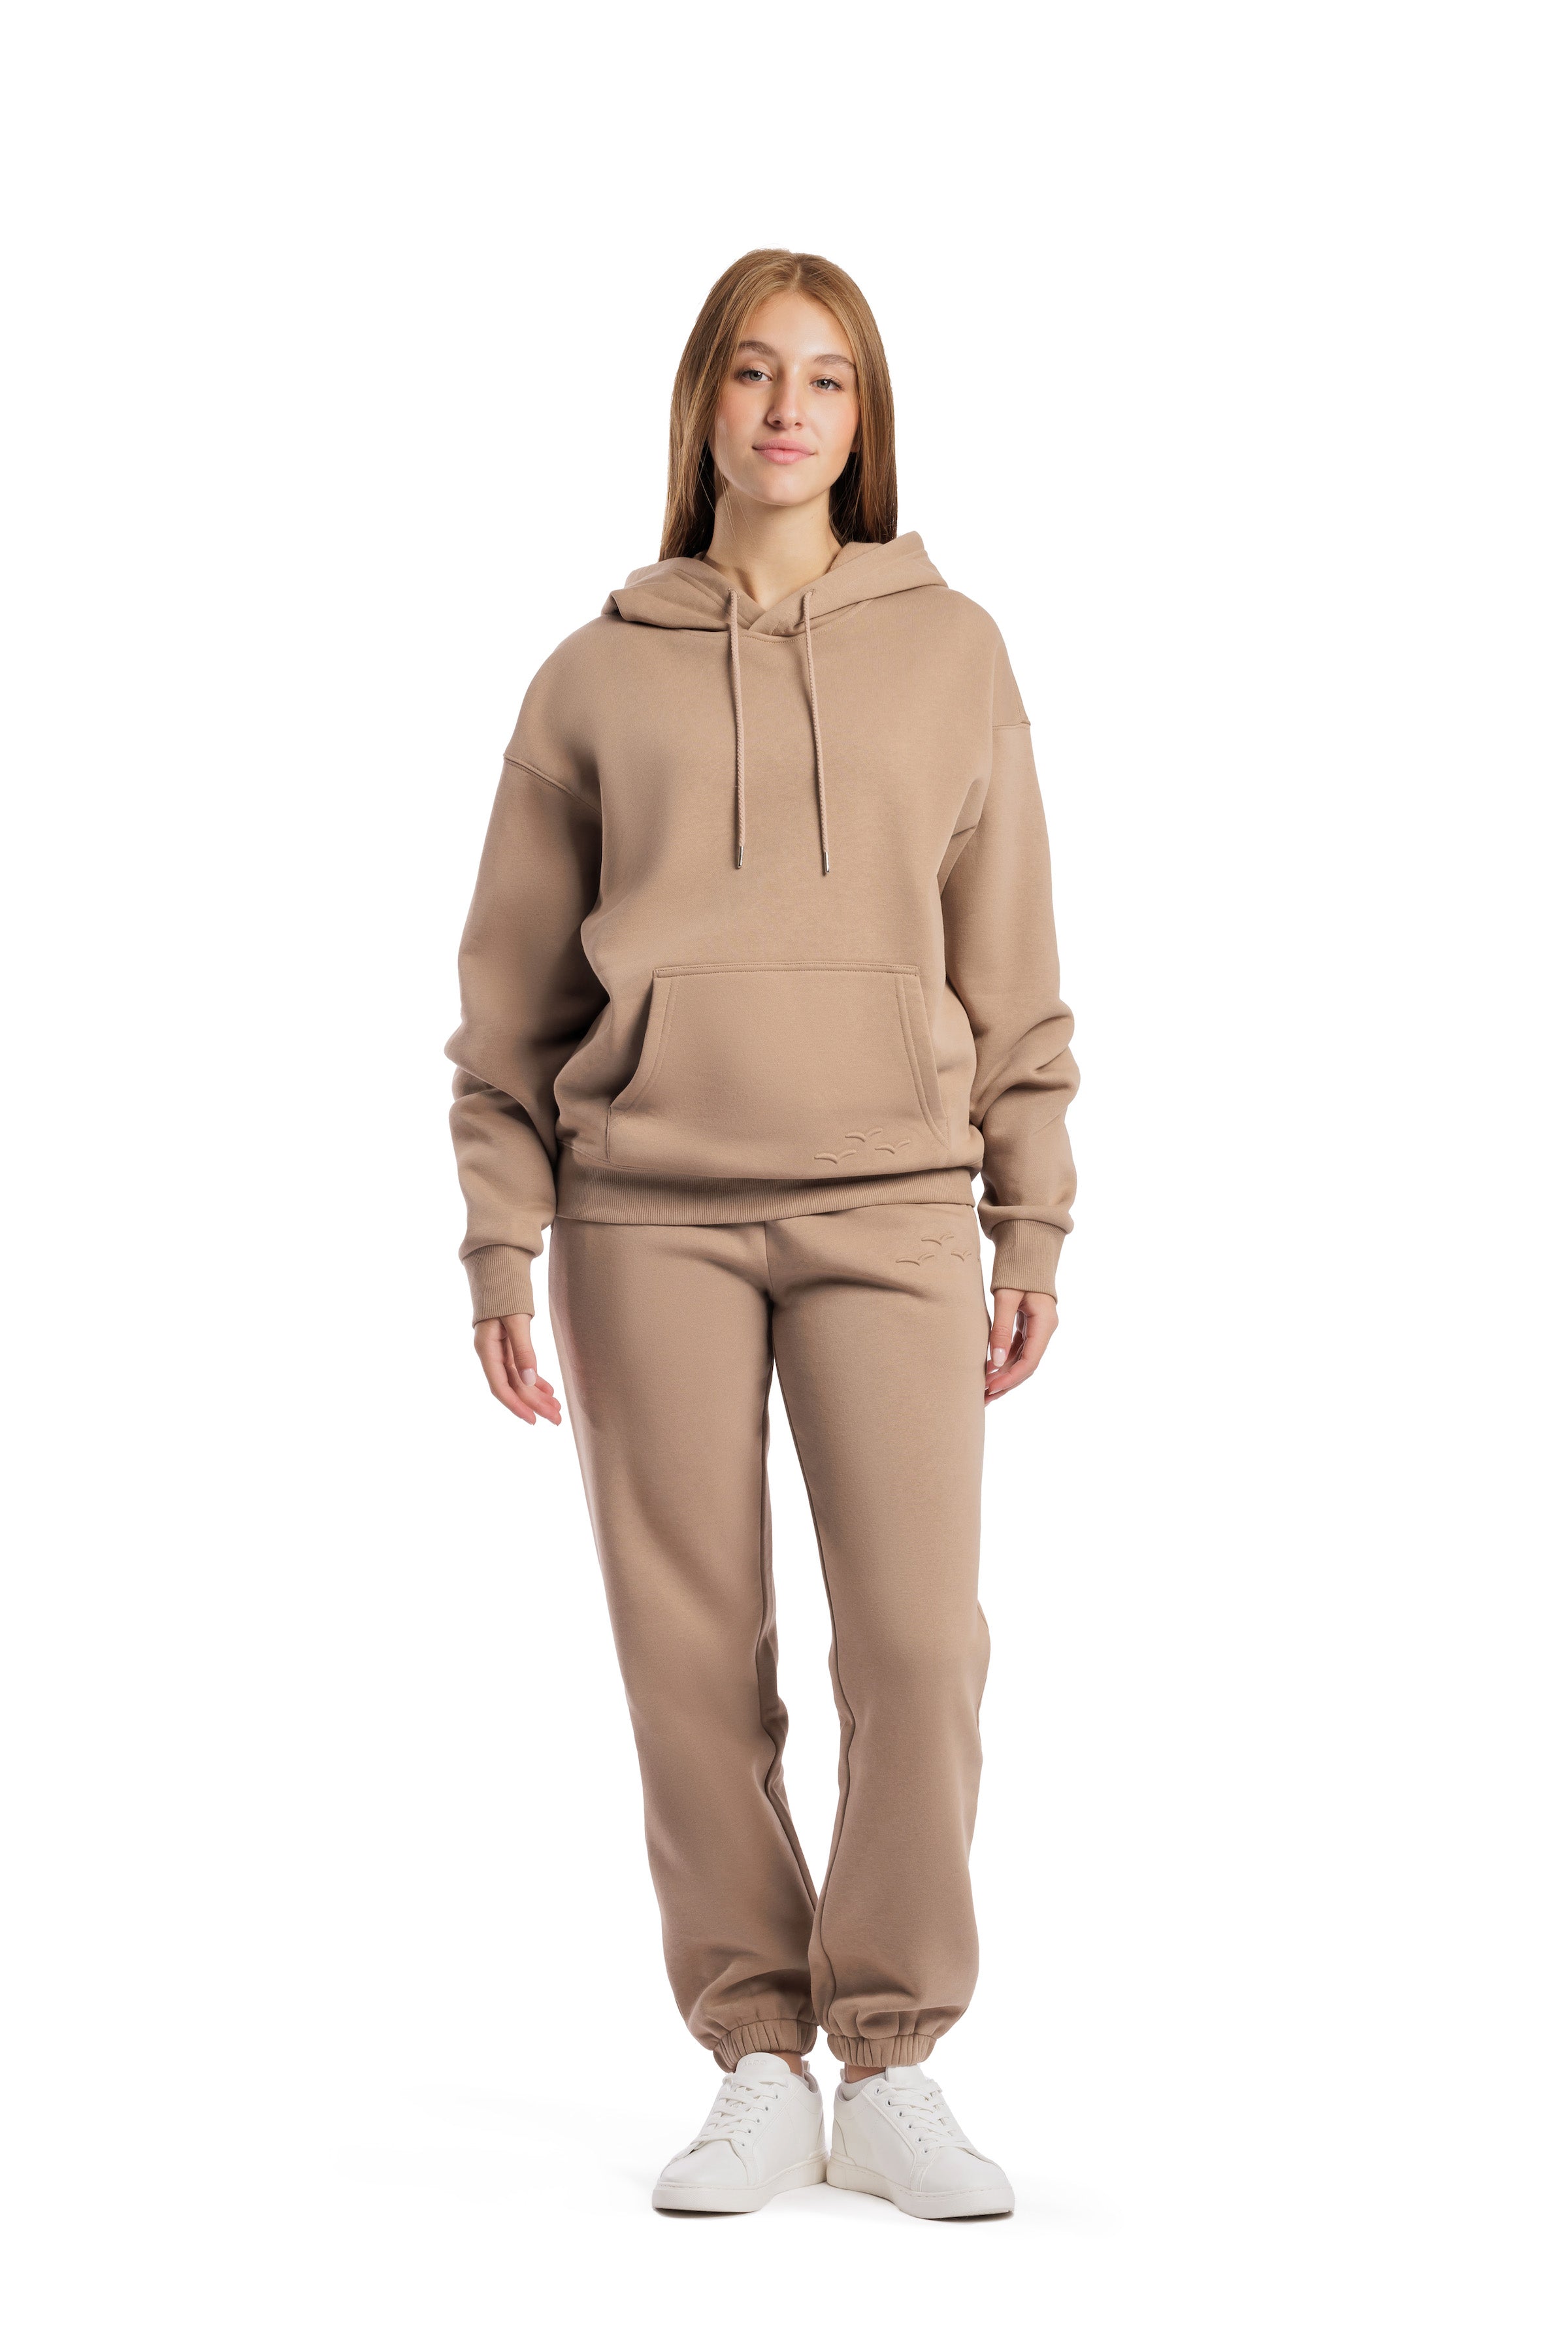 Flygo Womens 2 Piece Outfits Fleece Sweatsuit 1/4 Zip Pullover